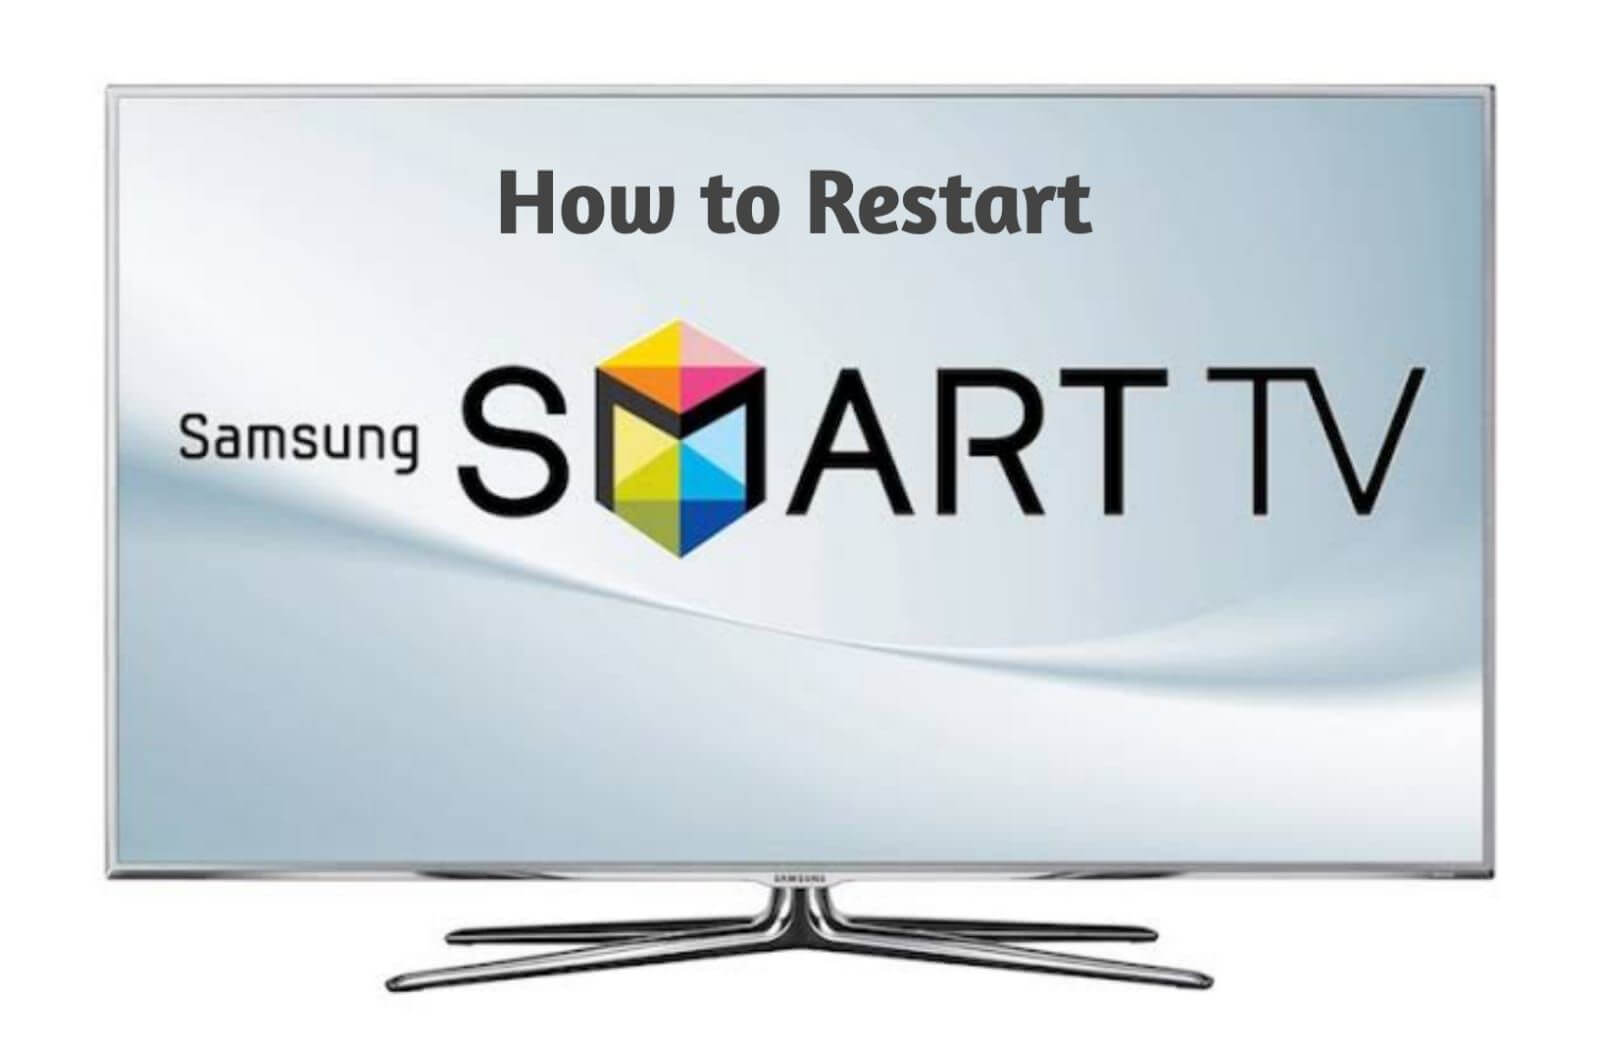 Reboot your Smart TV